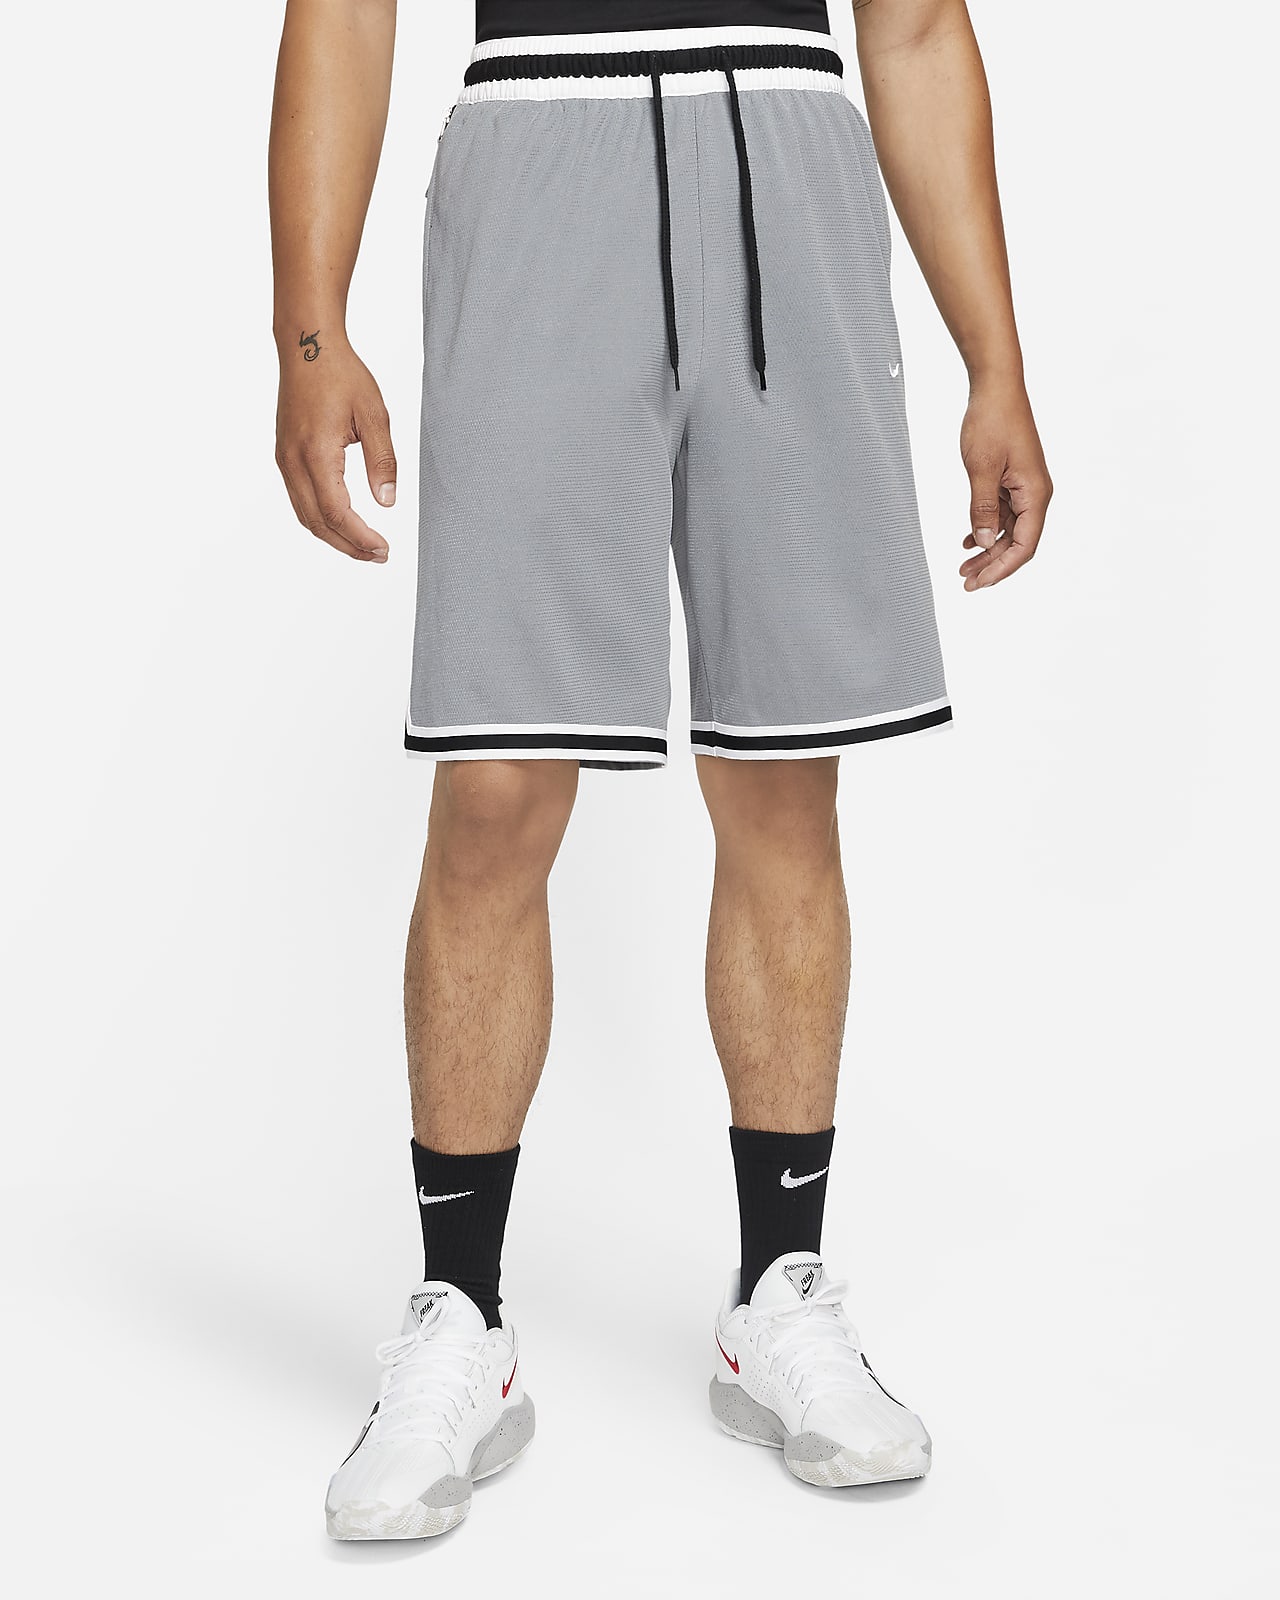 Shorts de básquetbol para hombre Nike Dri-FIT 3.0. Nike.com